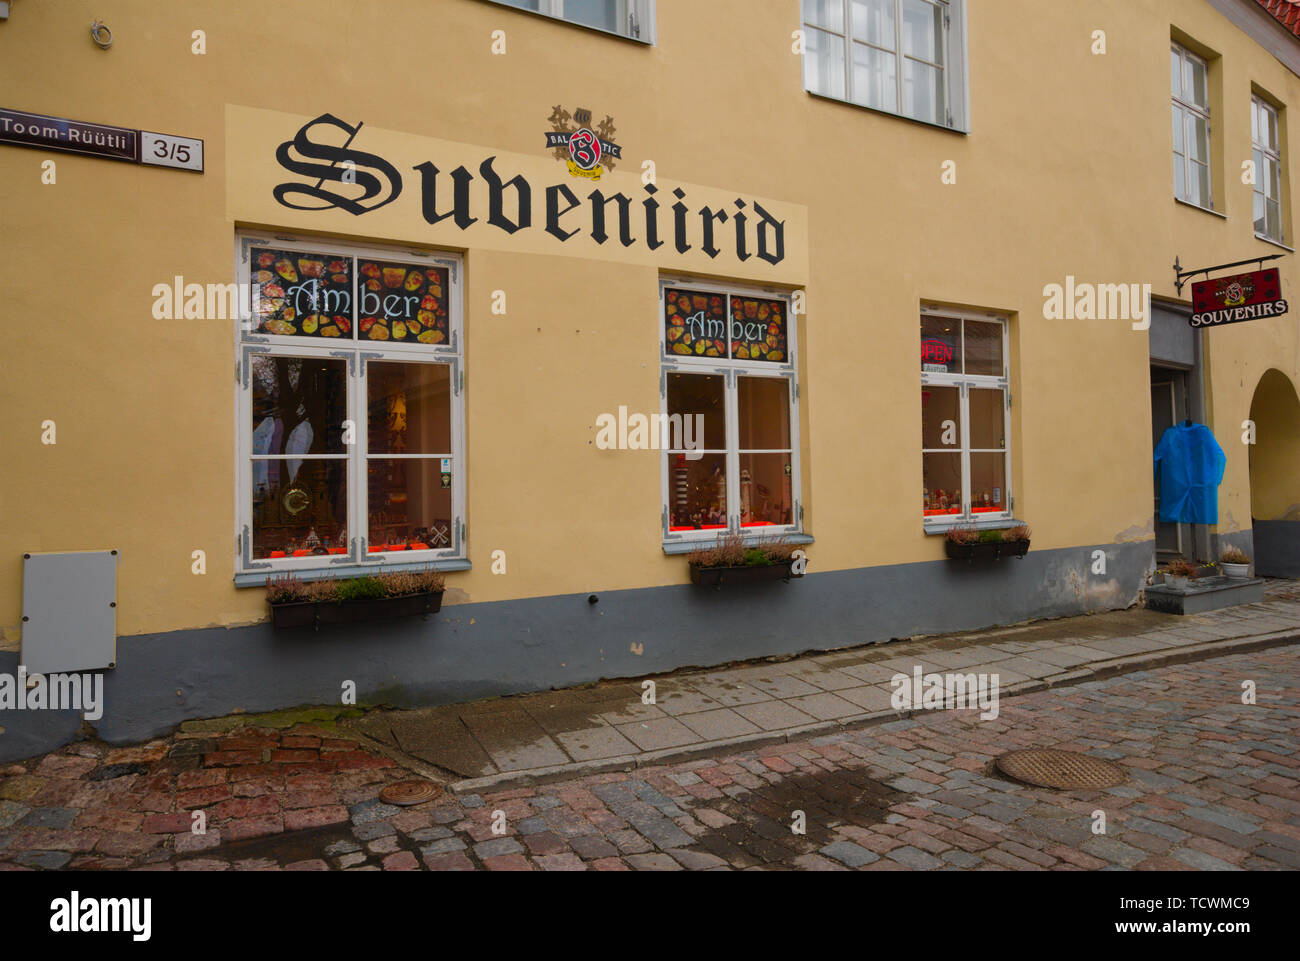 Subeniirid in Tallinn's 'Old Town', Estonia Stock Photo